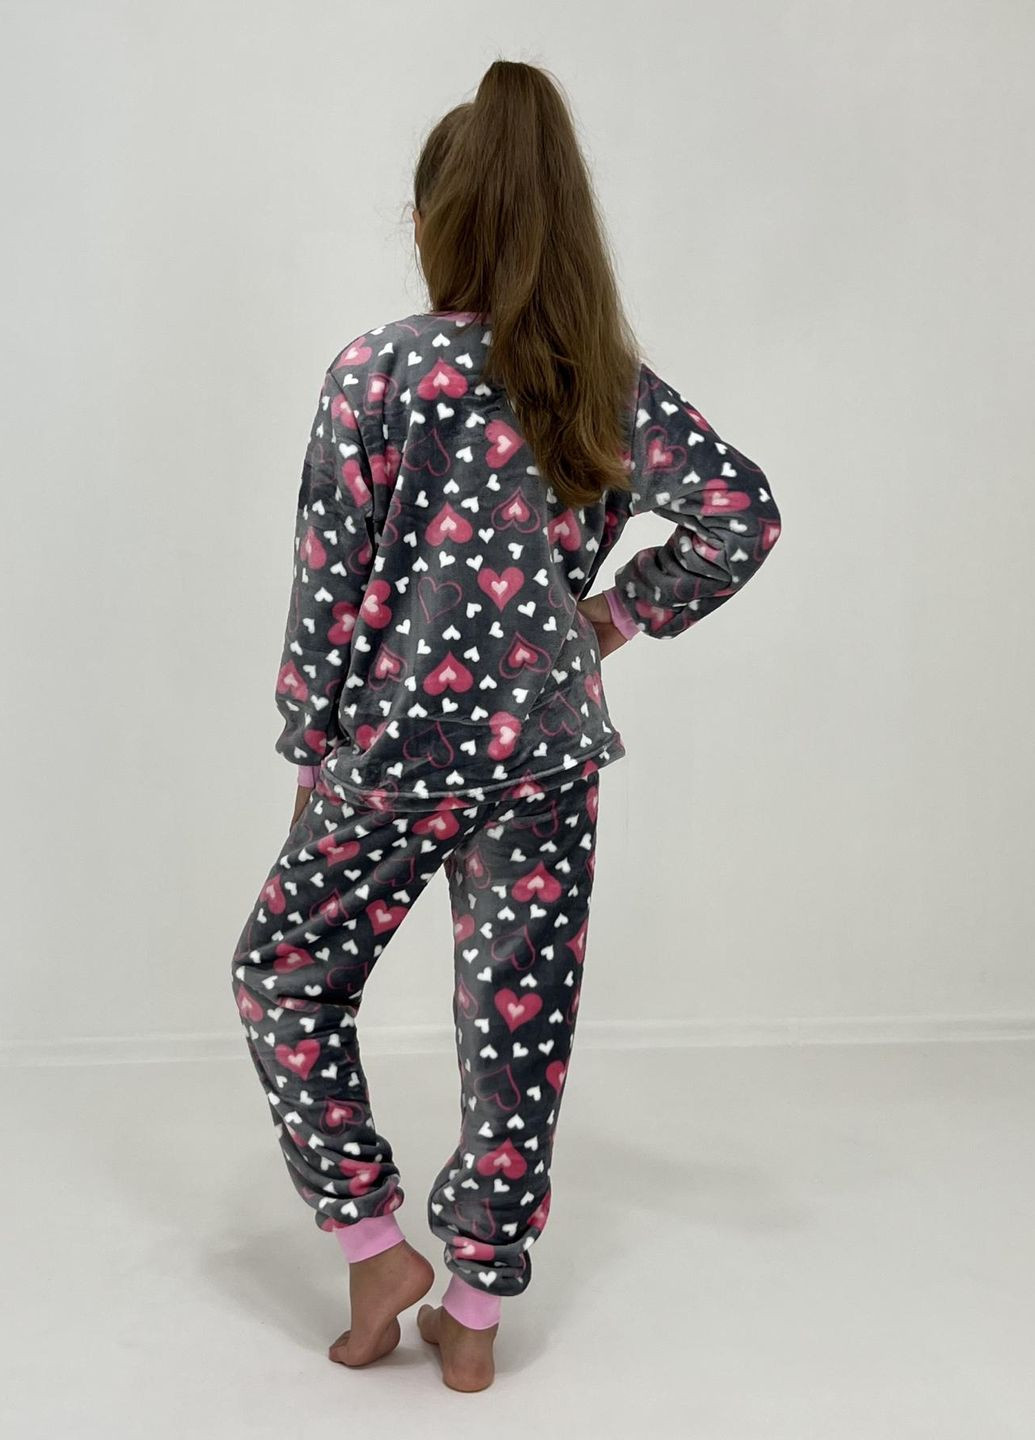 Серая зимняя пижама детская зимняя розовое сердечко 152 серая 74542012-4 Triko